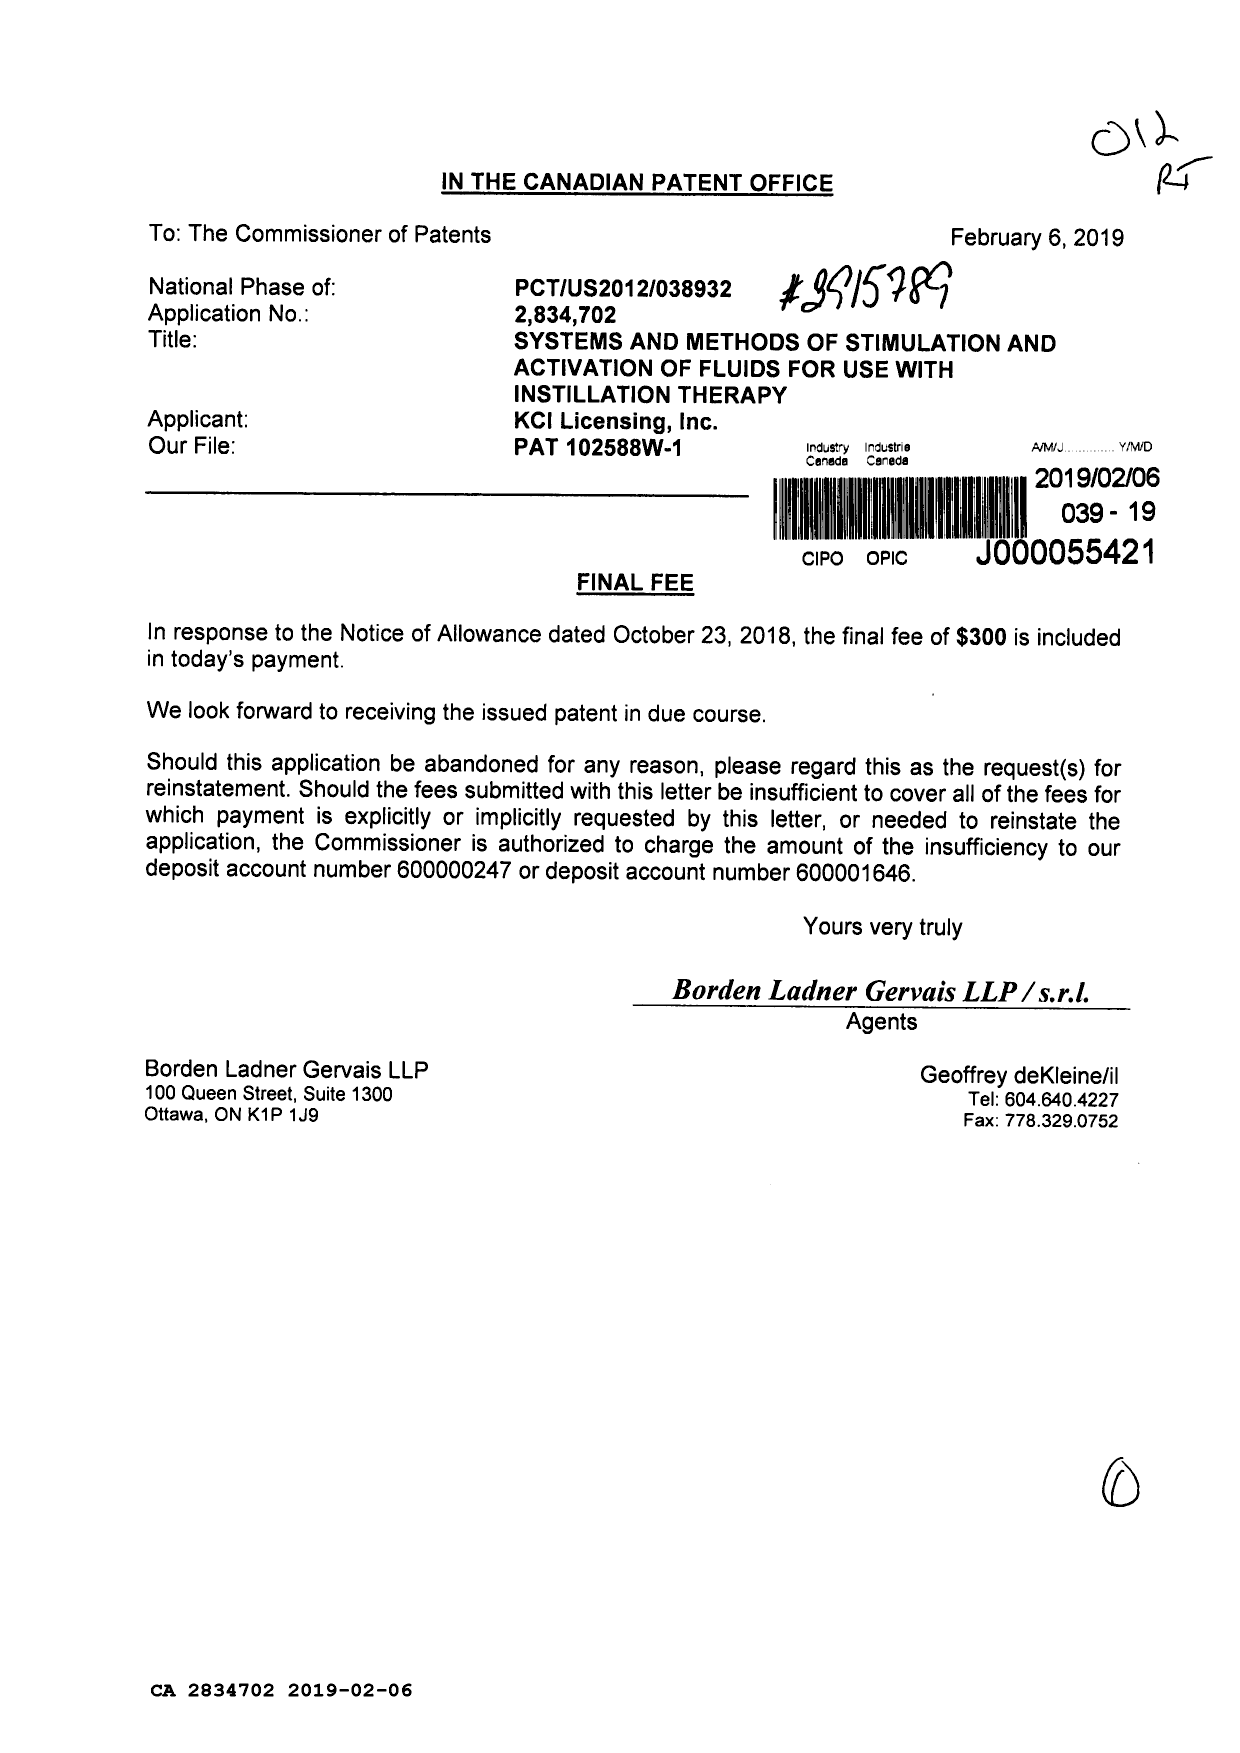 Document de brevet canadien 2834702. Taxe finale 20190206. Image 1 de 1